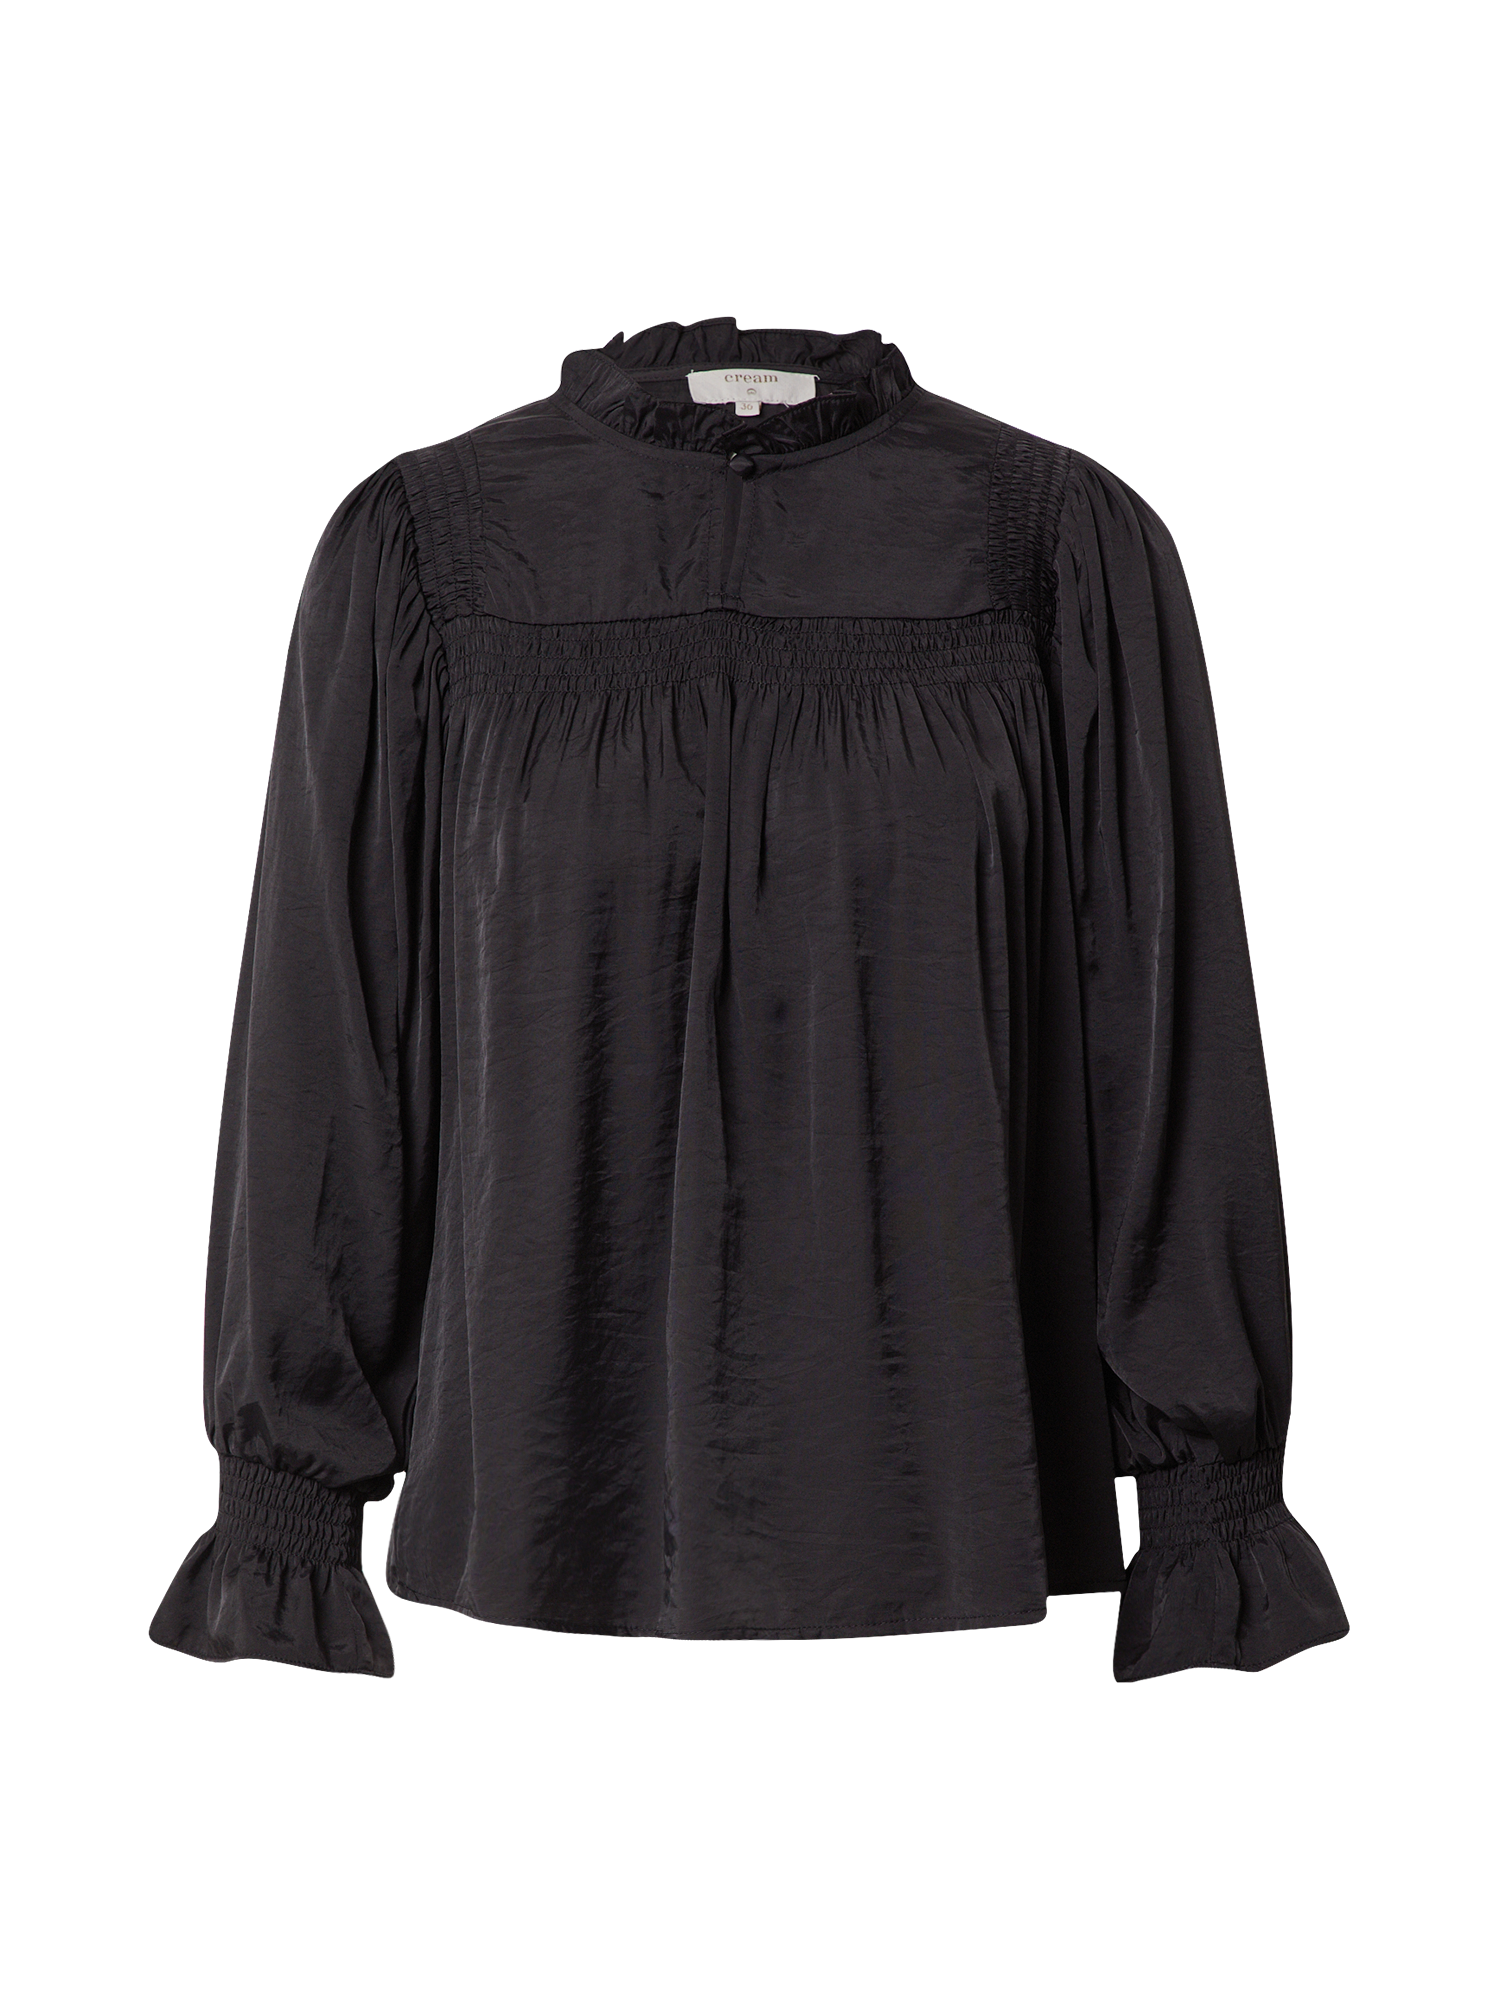 2d0AZ Odzież Cream Bluzka Emily w kolorze Czarnym 